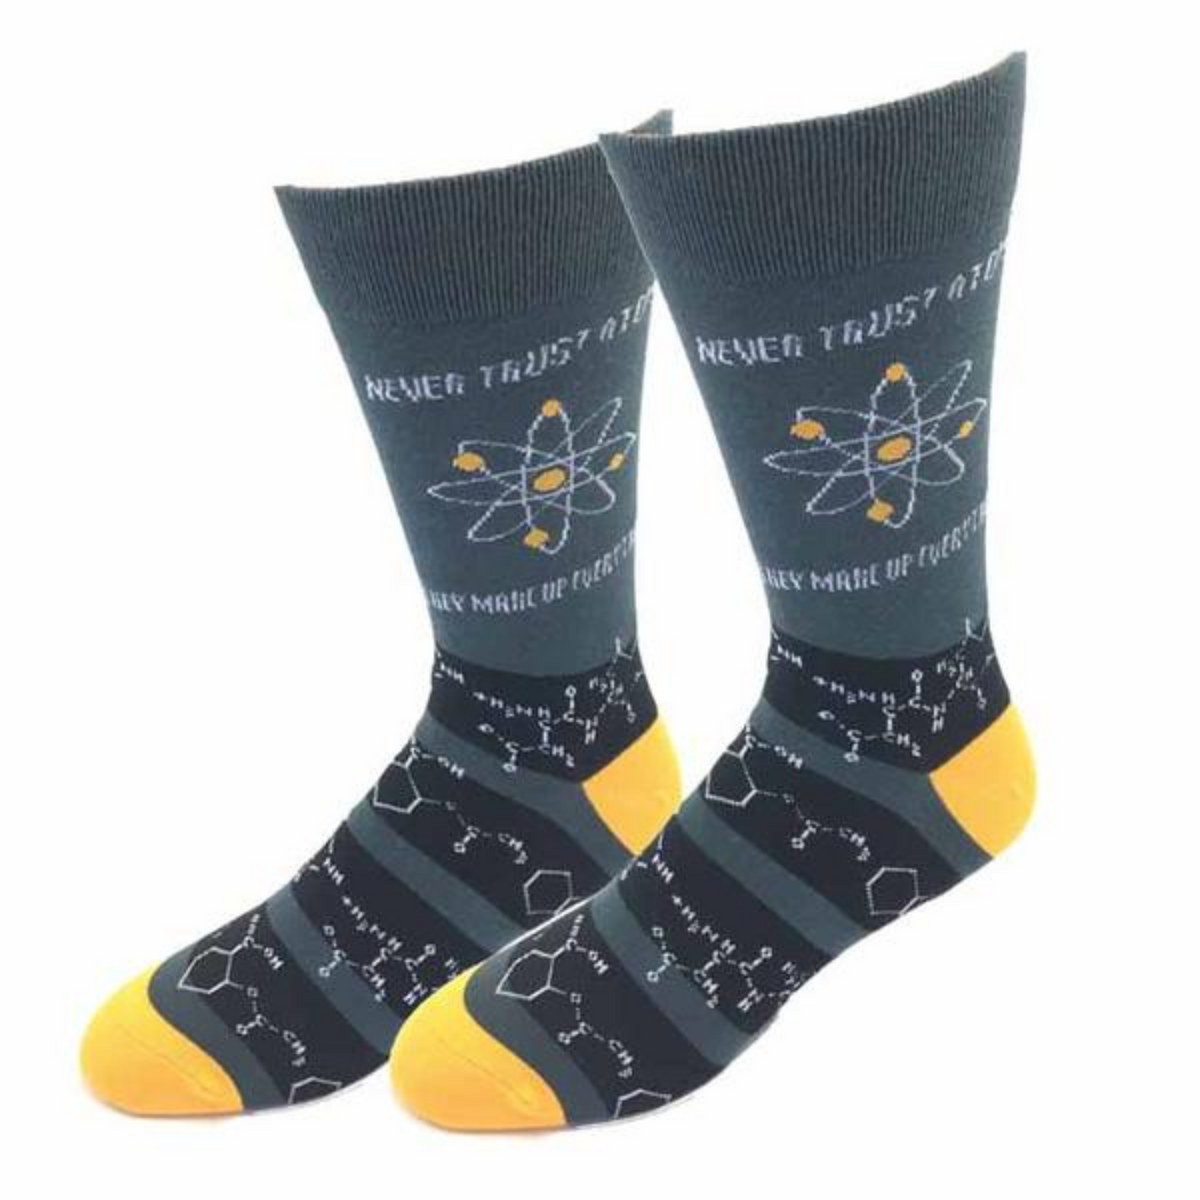 Sock Harbor Never Trust Atoms men&#39;s sock featuring gray sock with Never Trust Atoms and chemical composition figures